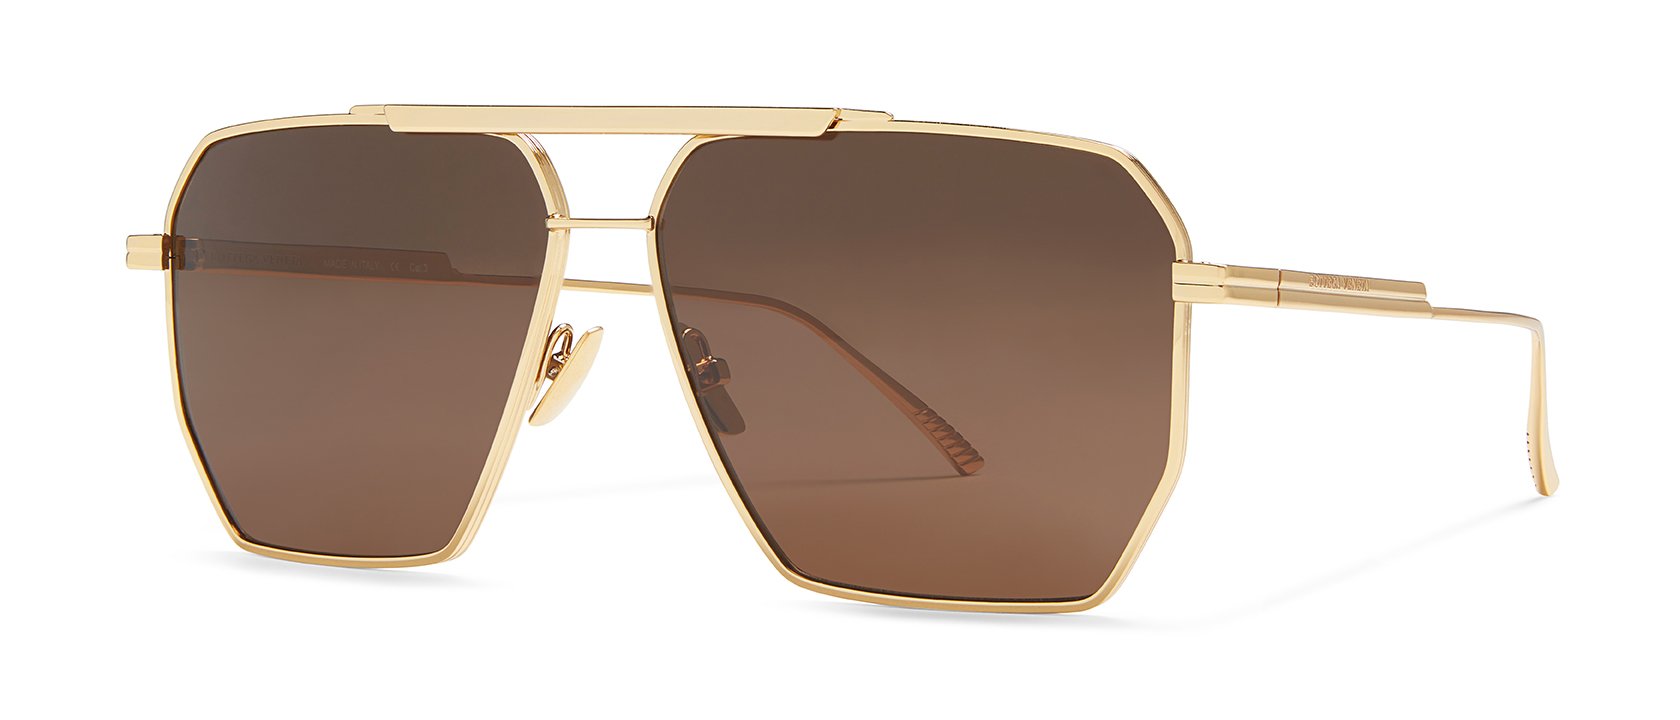 Brand New Bottega Veneta Sunglasses BV1012S 004 Gold Green Genuine Man